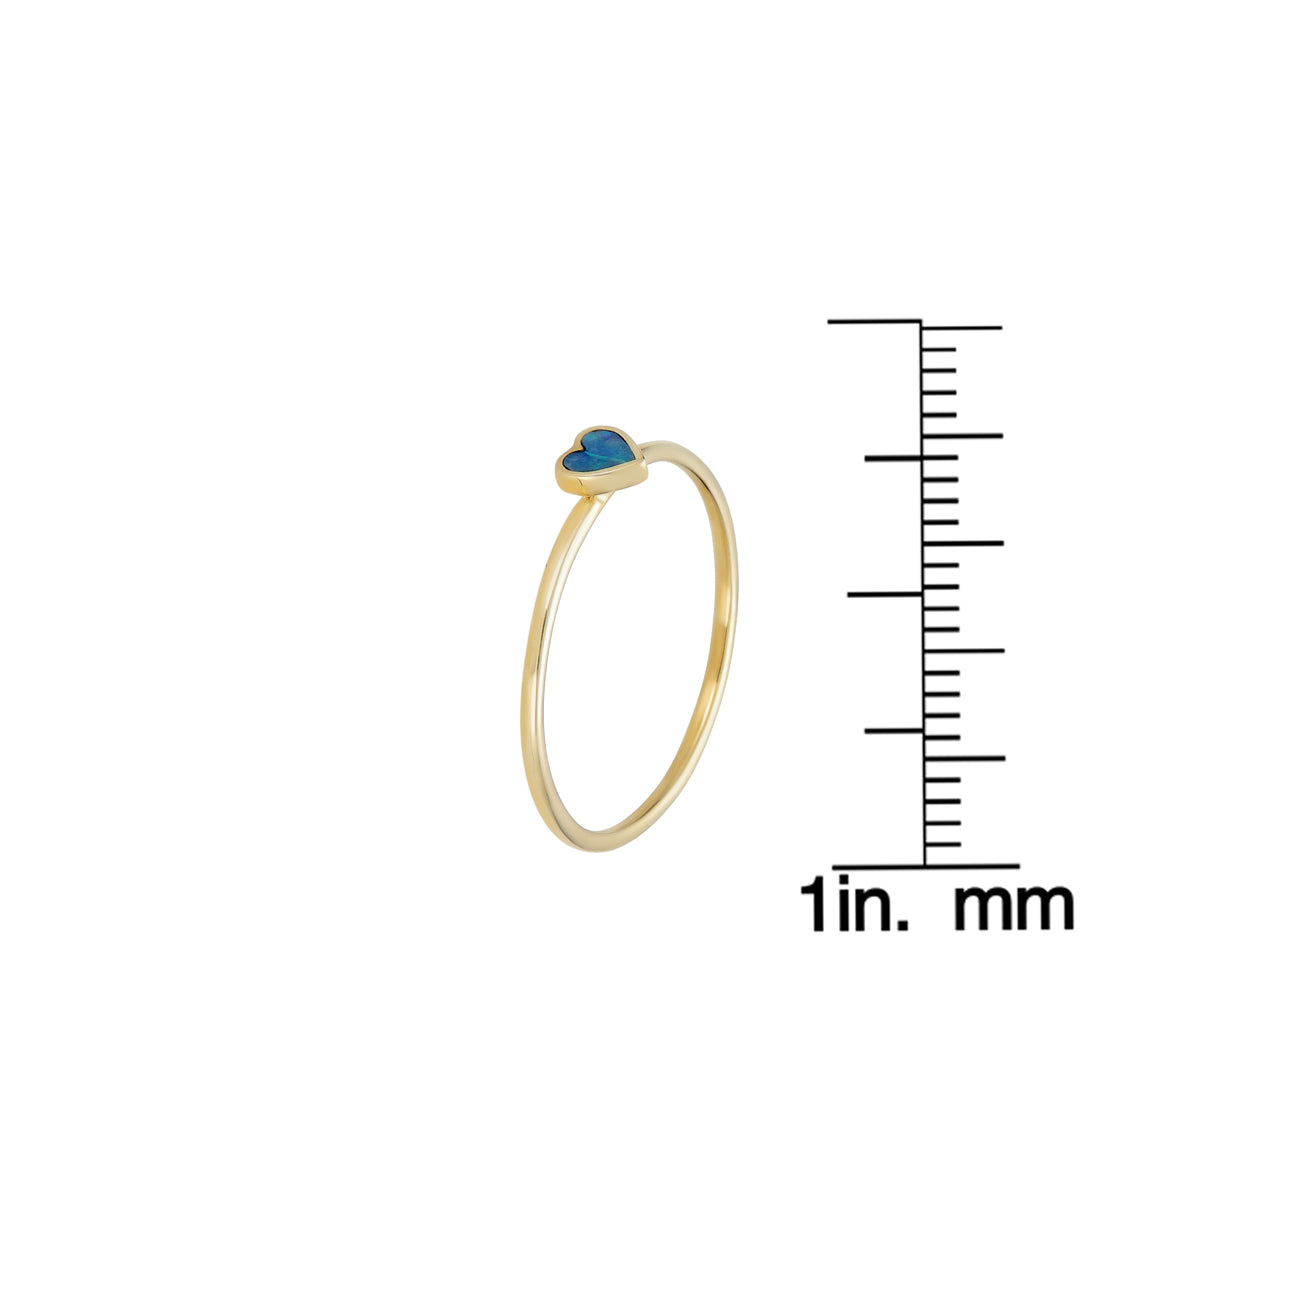 tiny opal inlaid heart ring 2_0e8aabd6 90c3 456a 9a94 8d0b1d8443fa